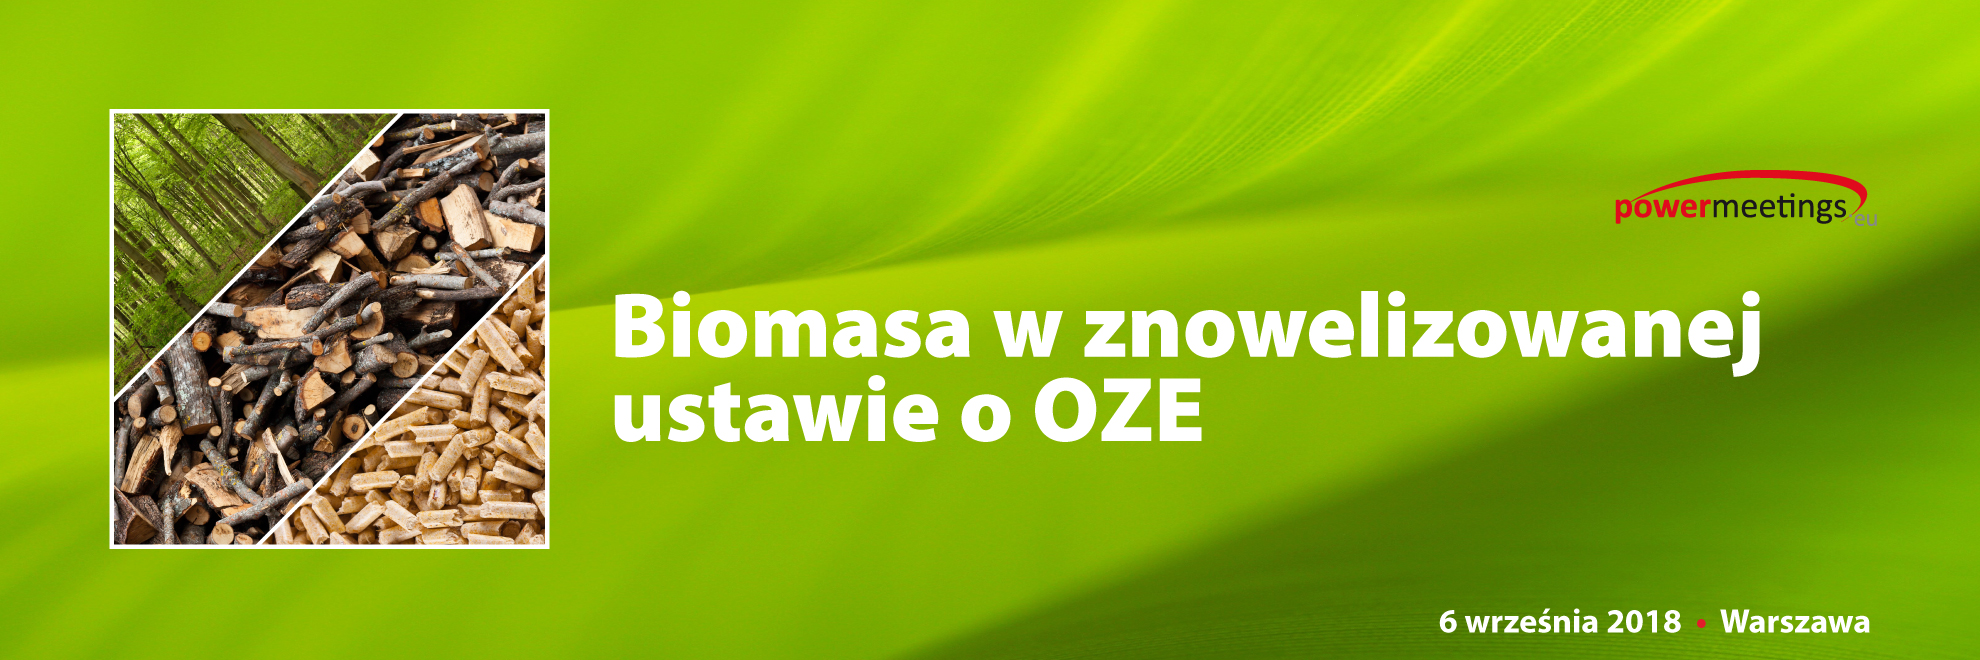 Biomasa w ustawie o OZE